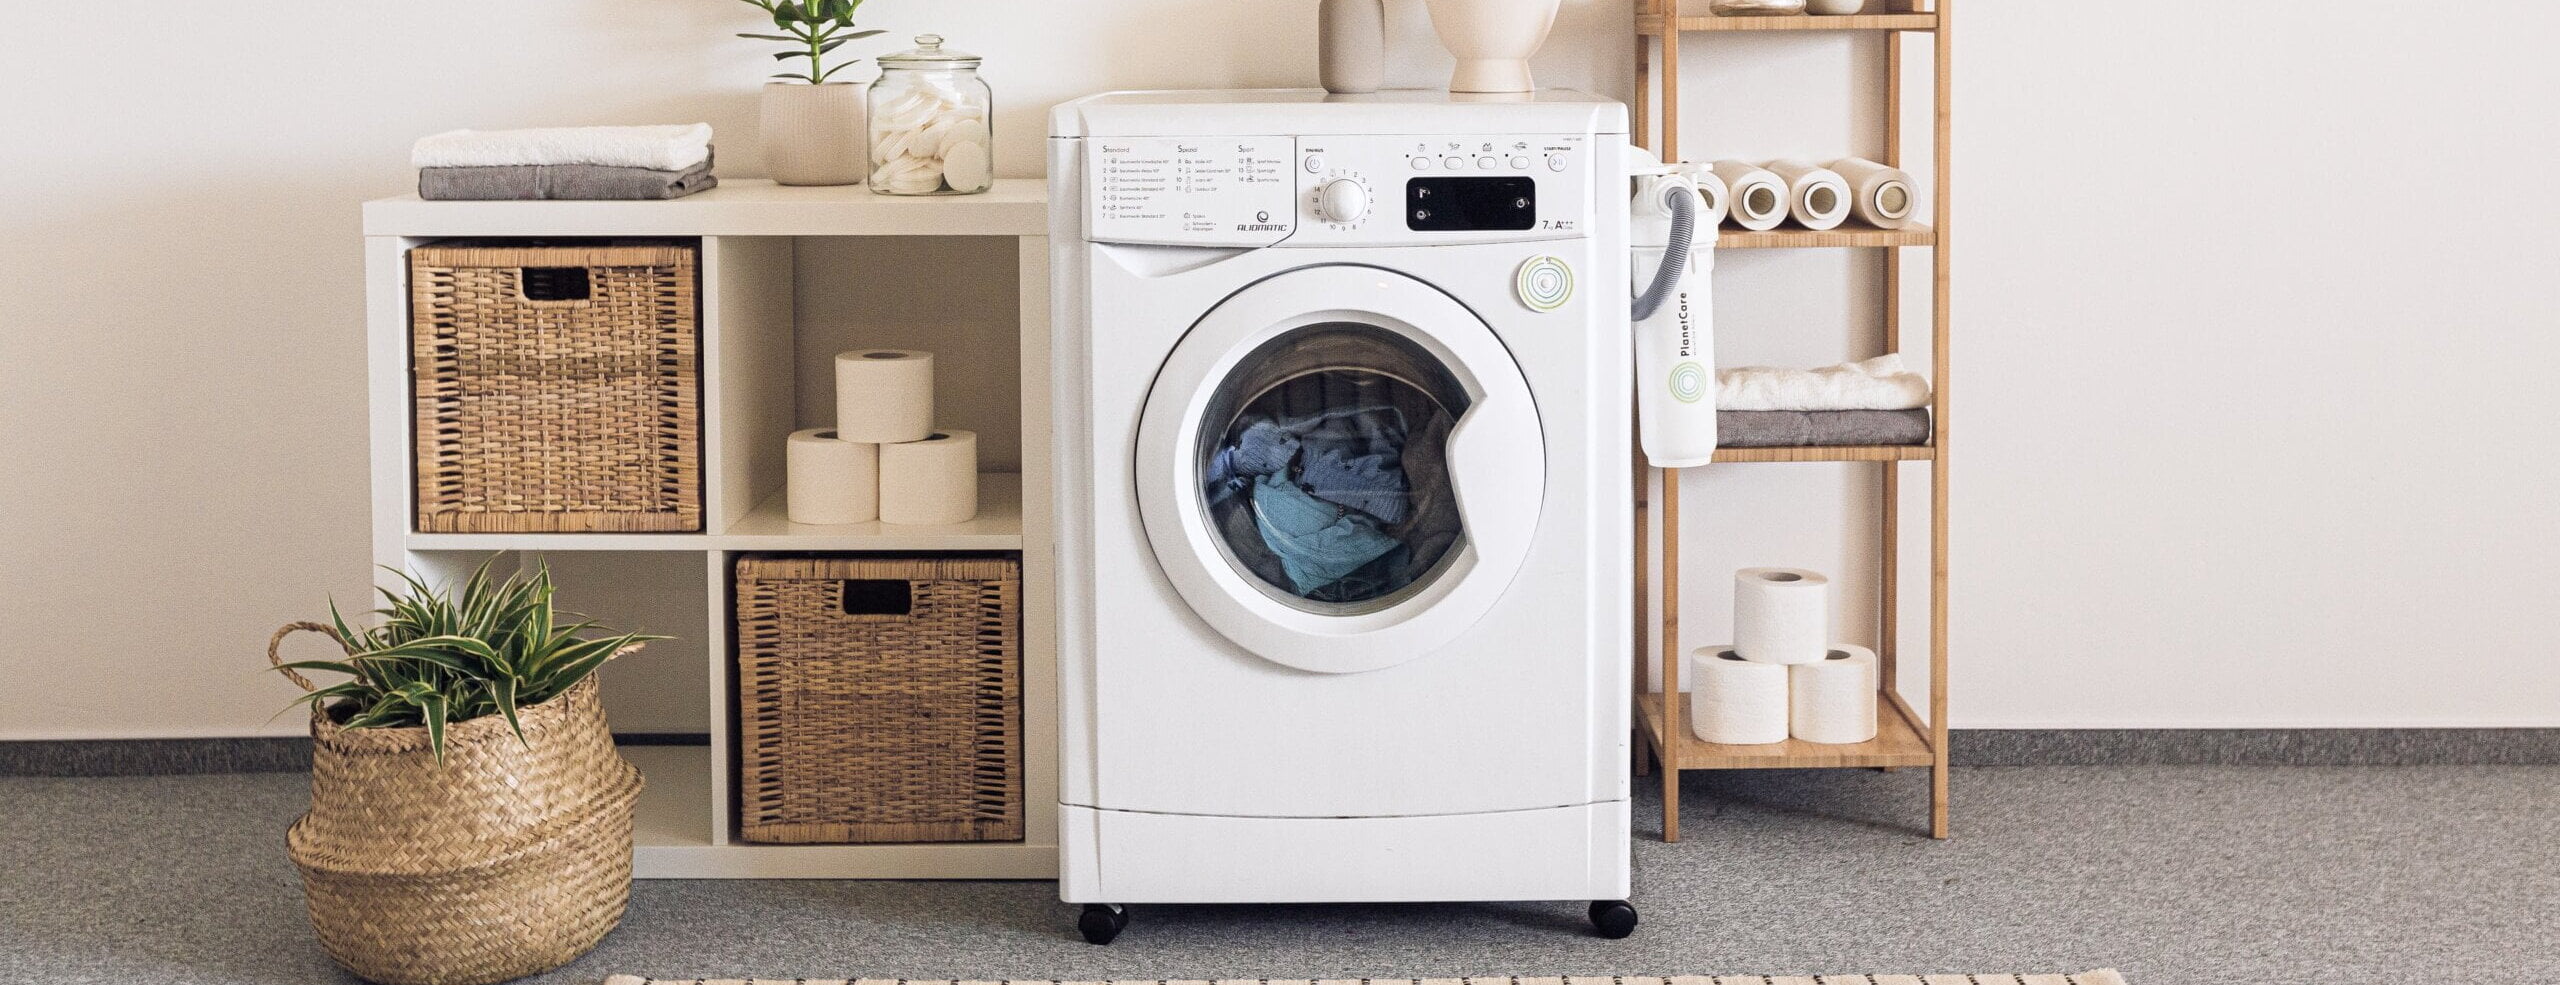 best 7 kg washing machine